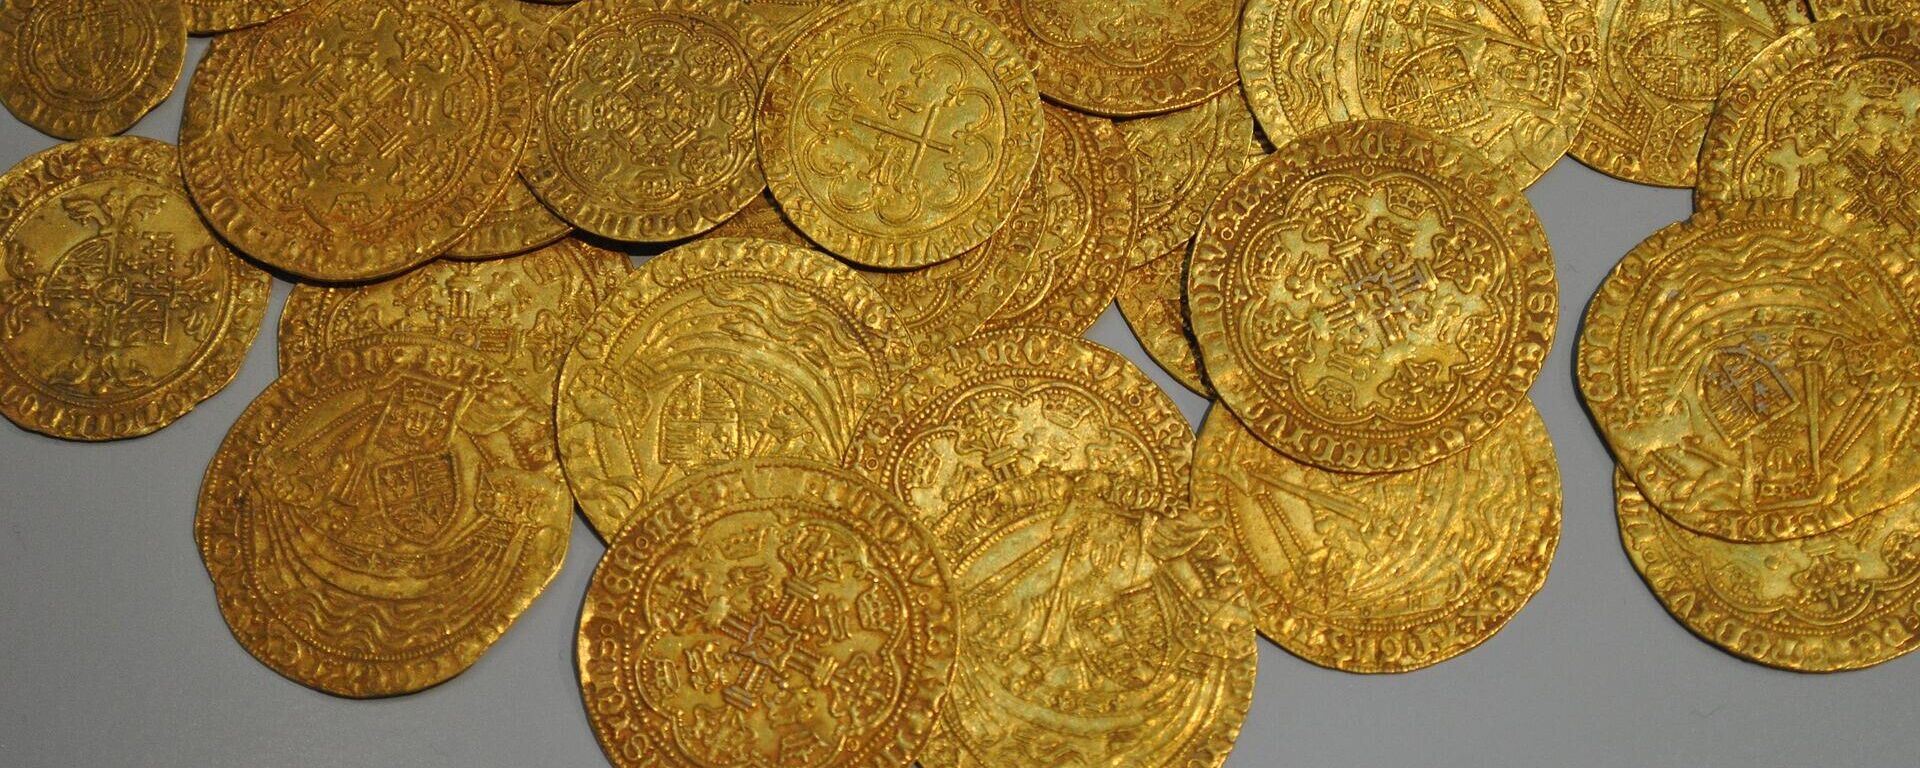 Monedas de oro (imagen referencial) - Sputnik Mundo, 1920, 08.09.2021